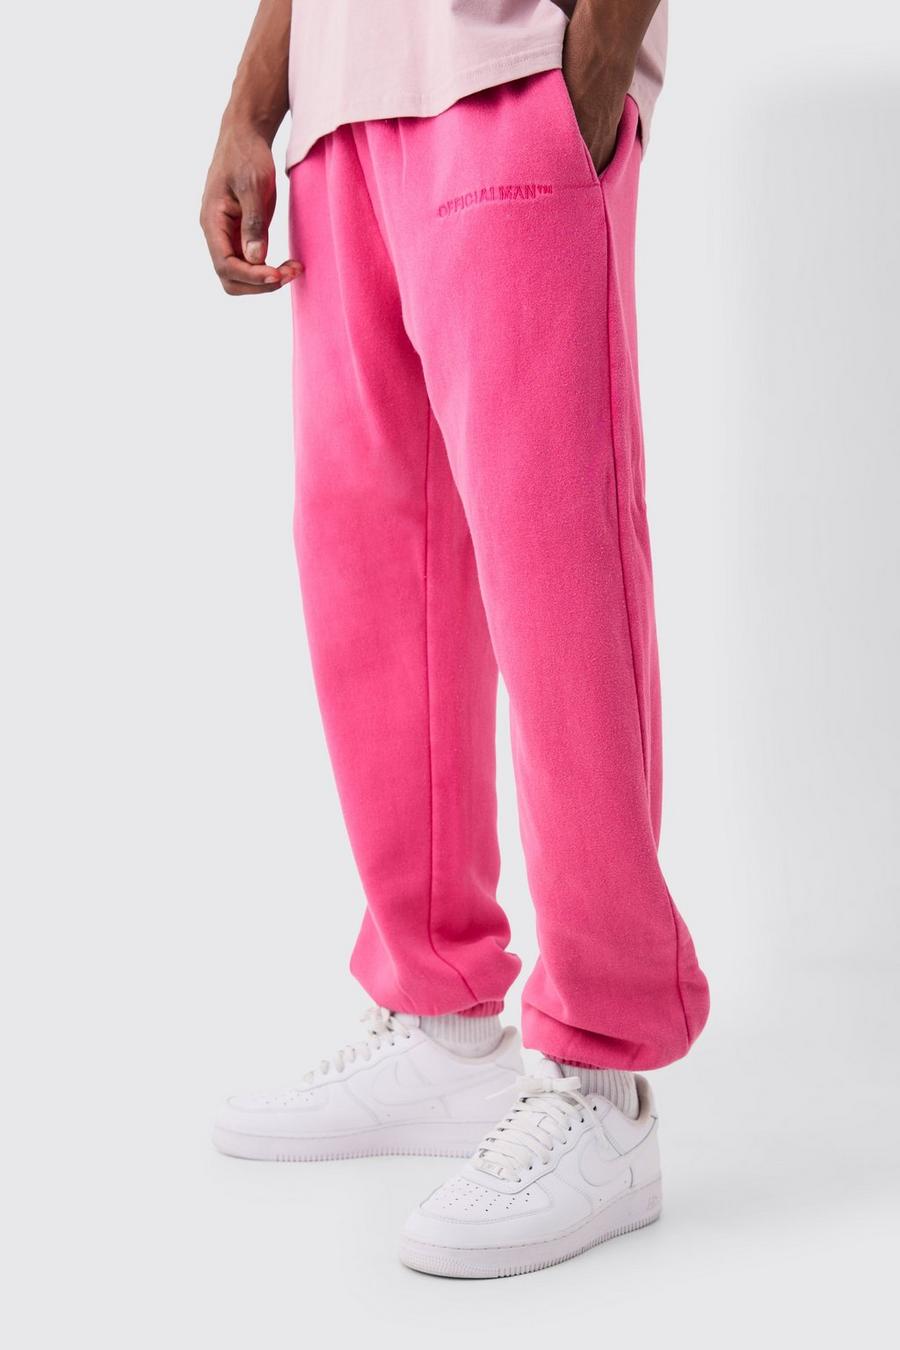 Pantalón deportivo Official con lavado a la piedra, Pink